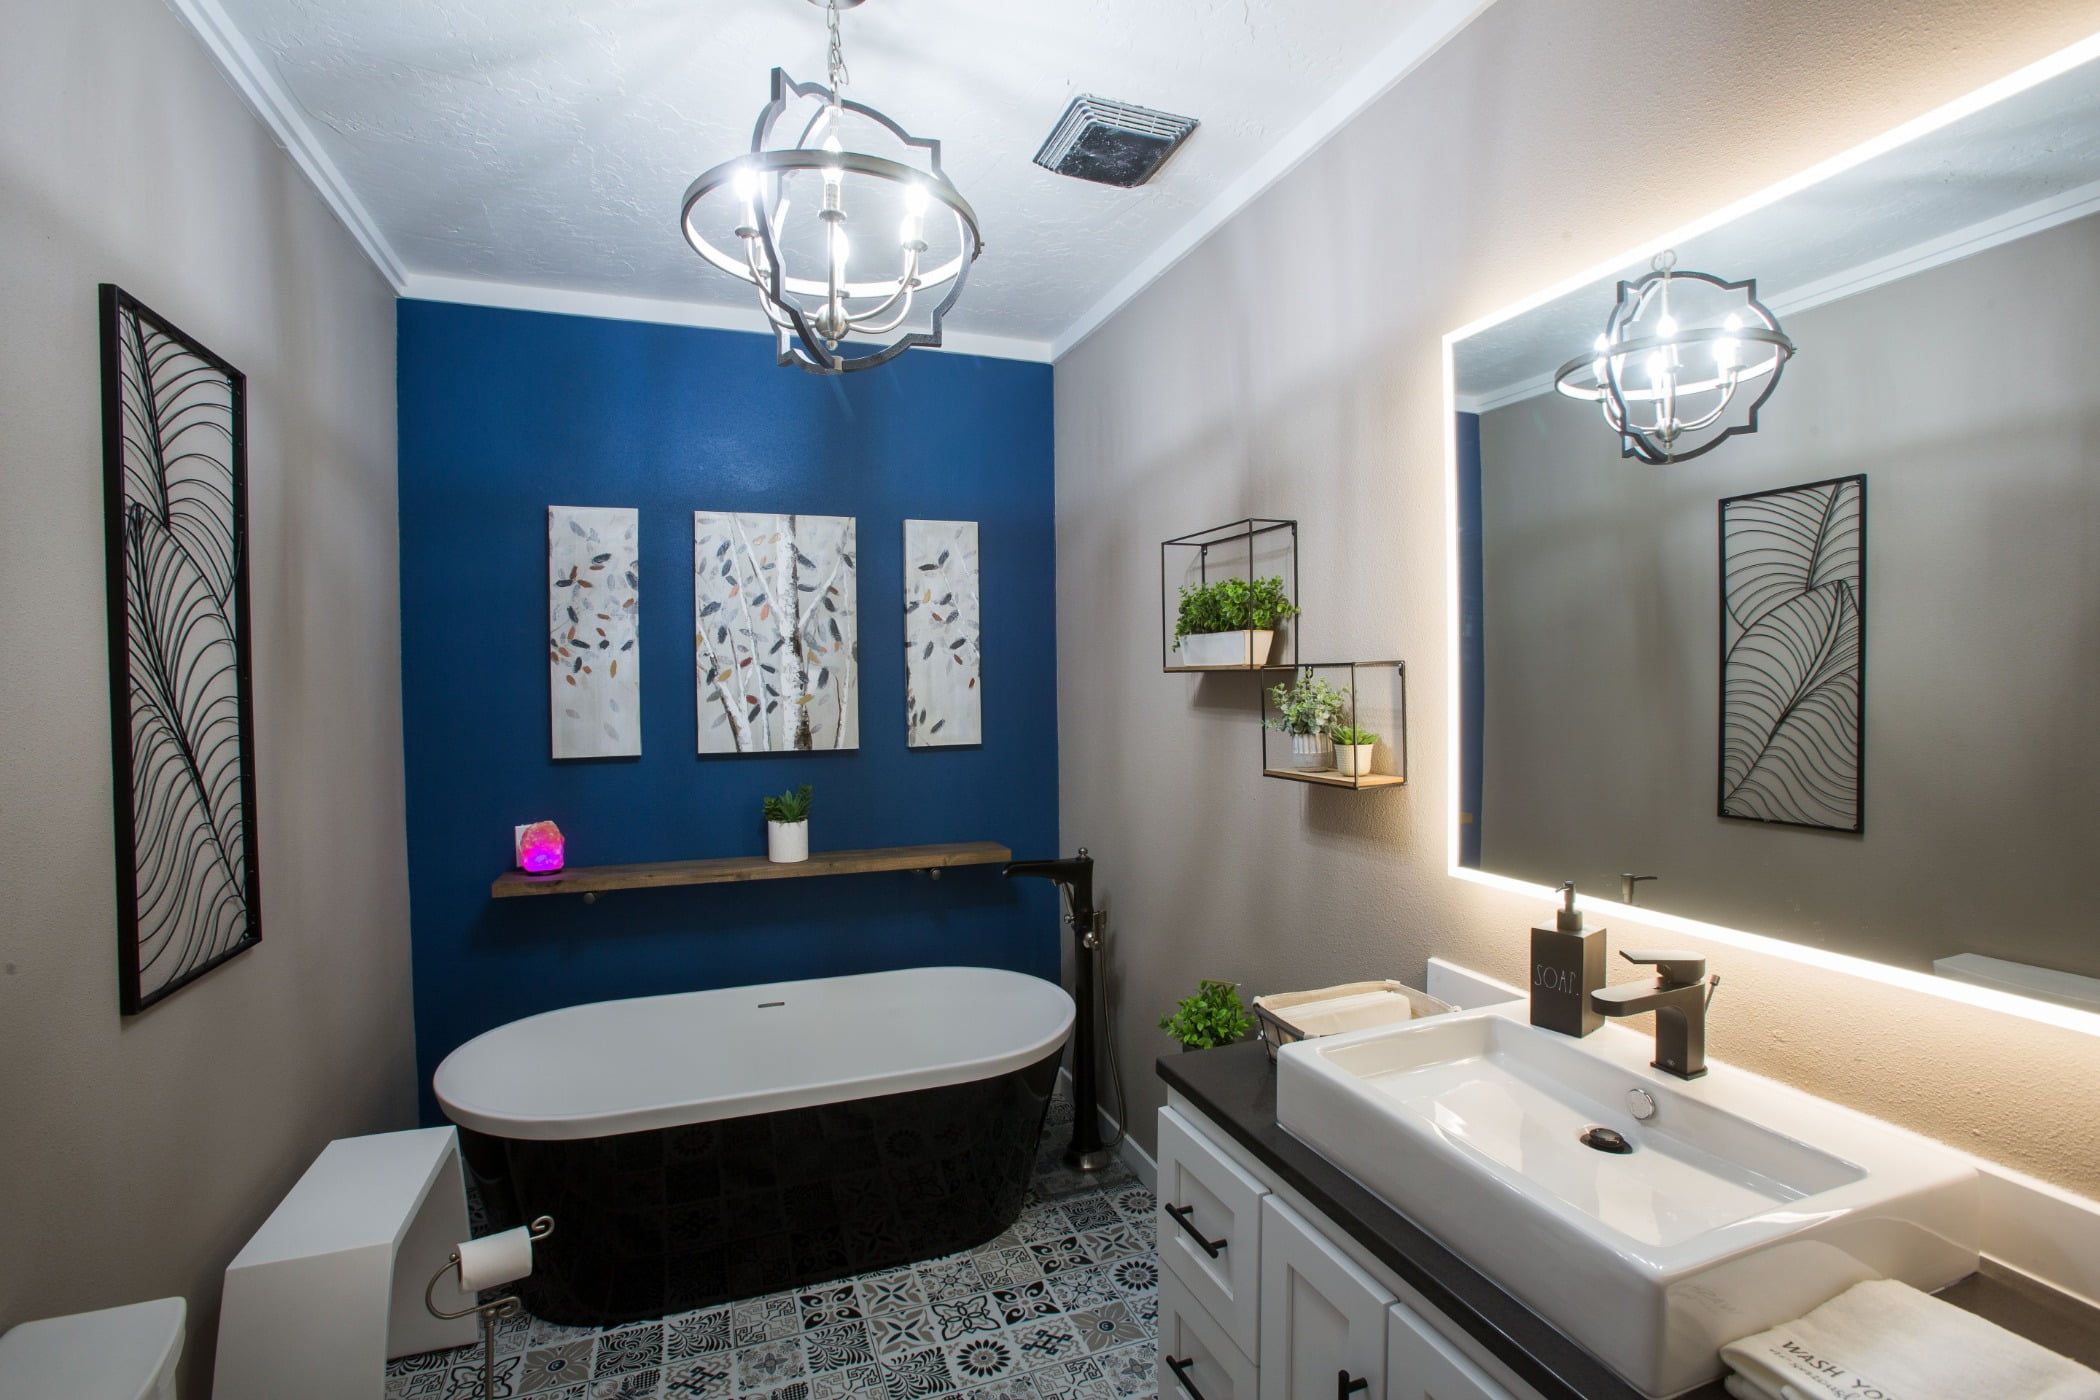 Plumbing fixture, Bathroom cabinet, Mirror, Sink, Tap, Furniture, Property, Building, Azure